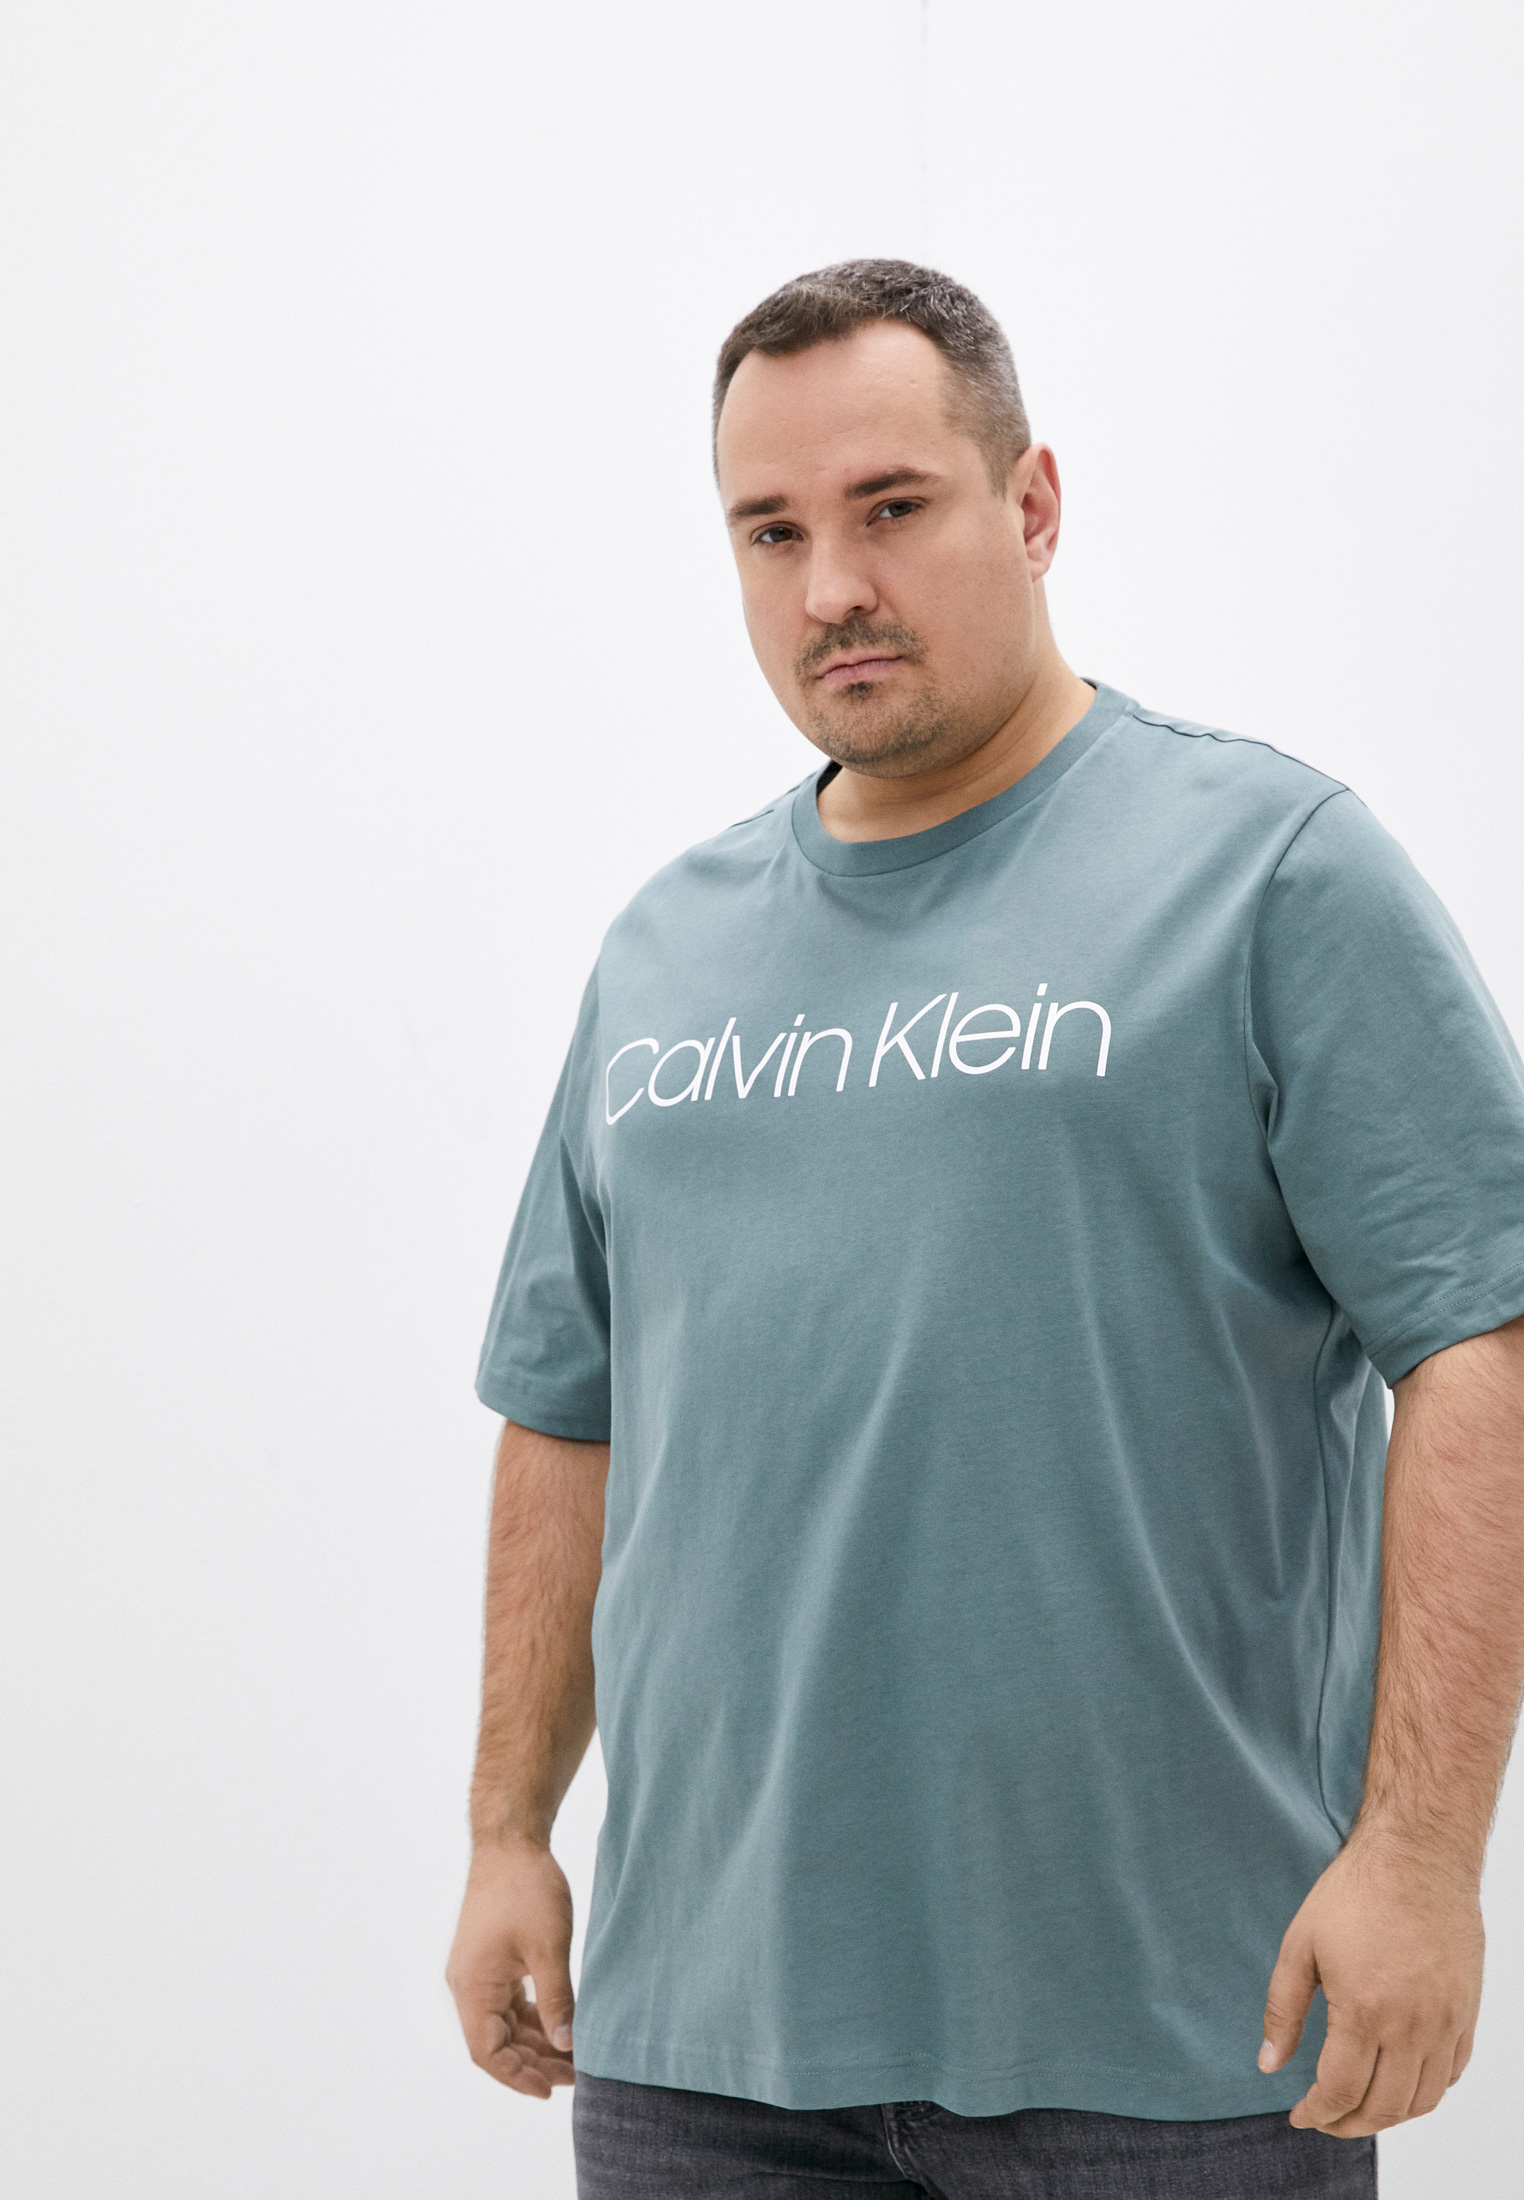 Мужская футболка Calvin Klein (Кельвин Кляйн) K10K104364: изображение 1